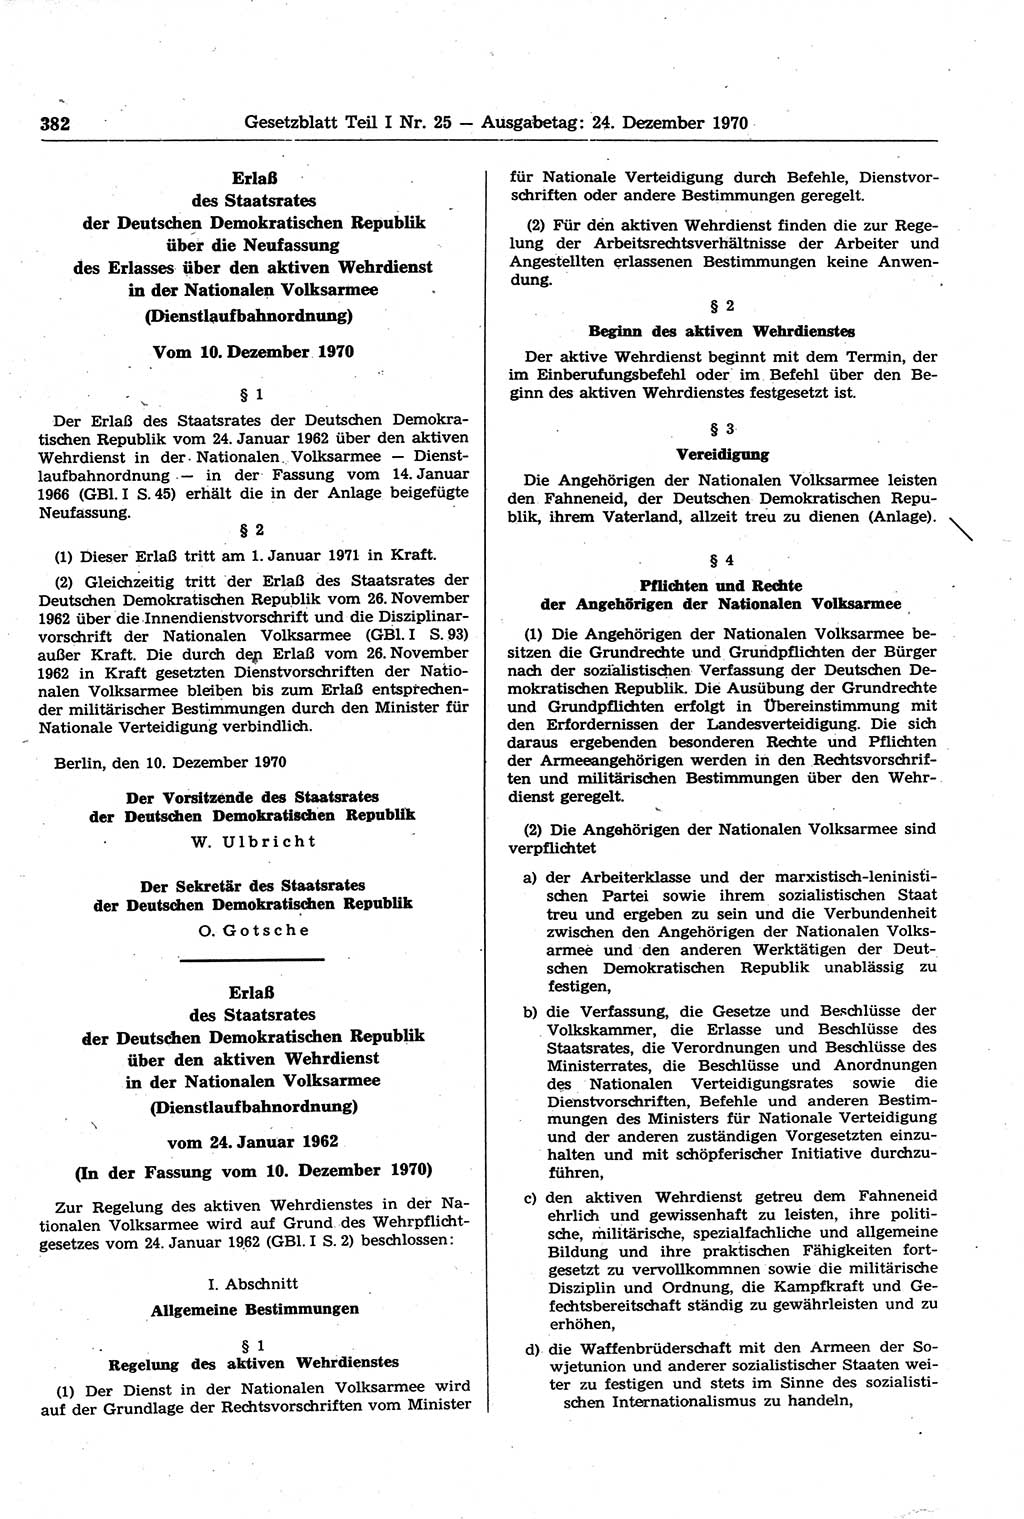 Gesetzblatt (GBl.) der Deutschen Demokratischen Republik (DDR) Teil Ⅰ 1970, Seite 382 (GBl. DDR Ⅰ 1970, S. 382)